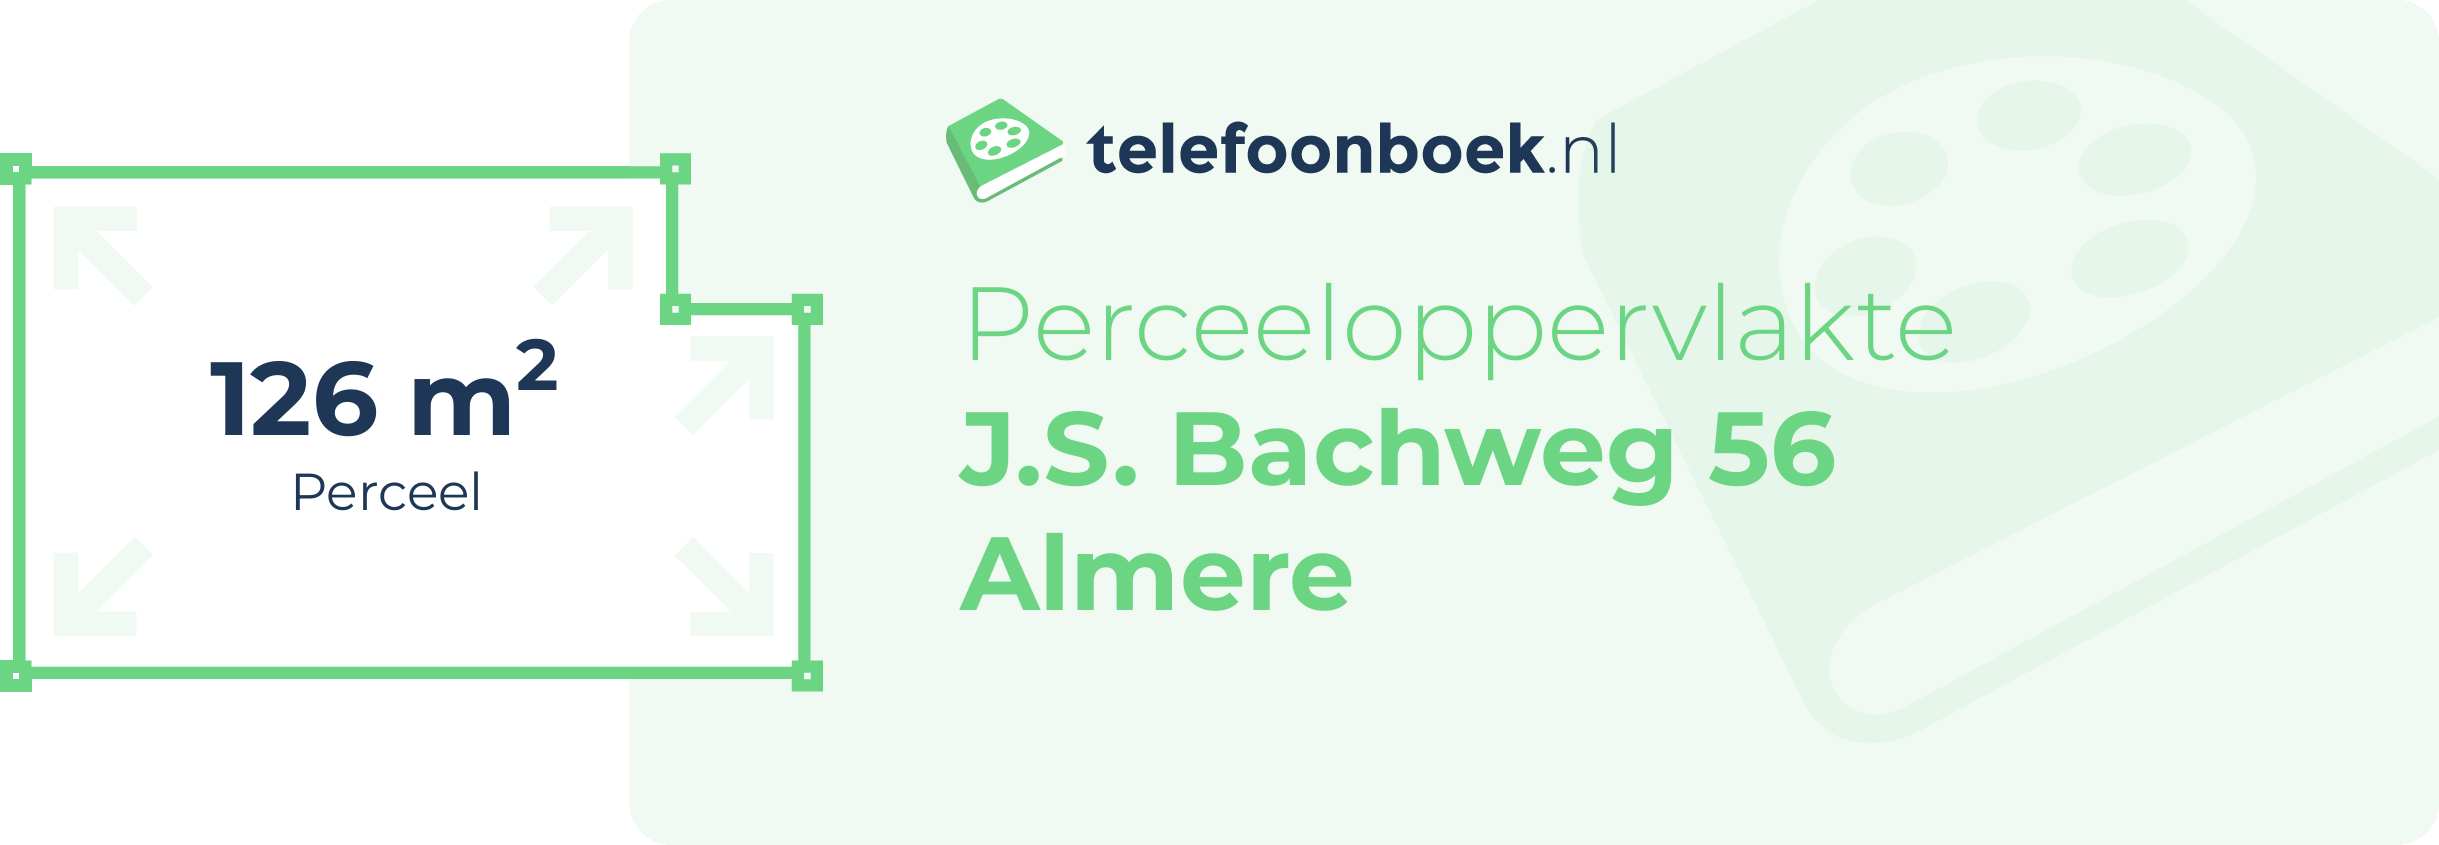 Perceeloppervlakte J.S. Bachweg 56 Almere